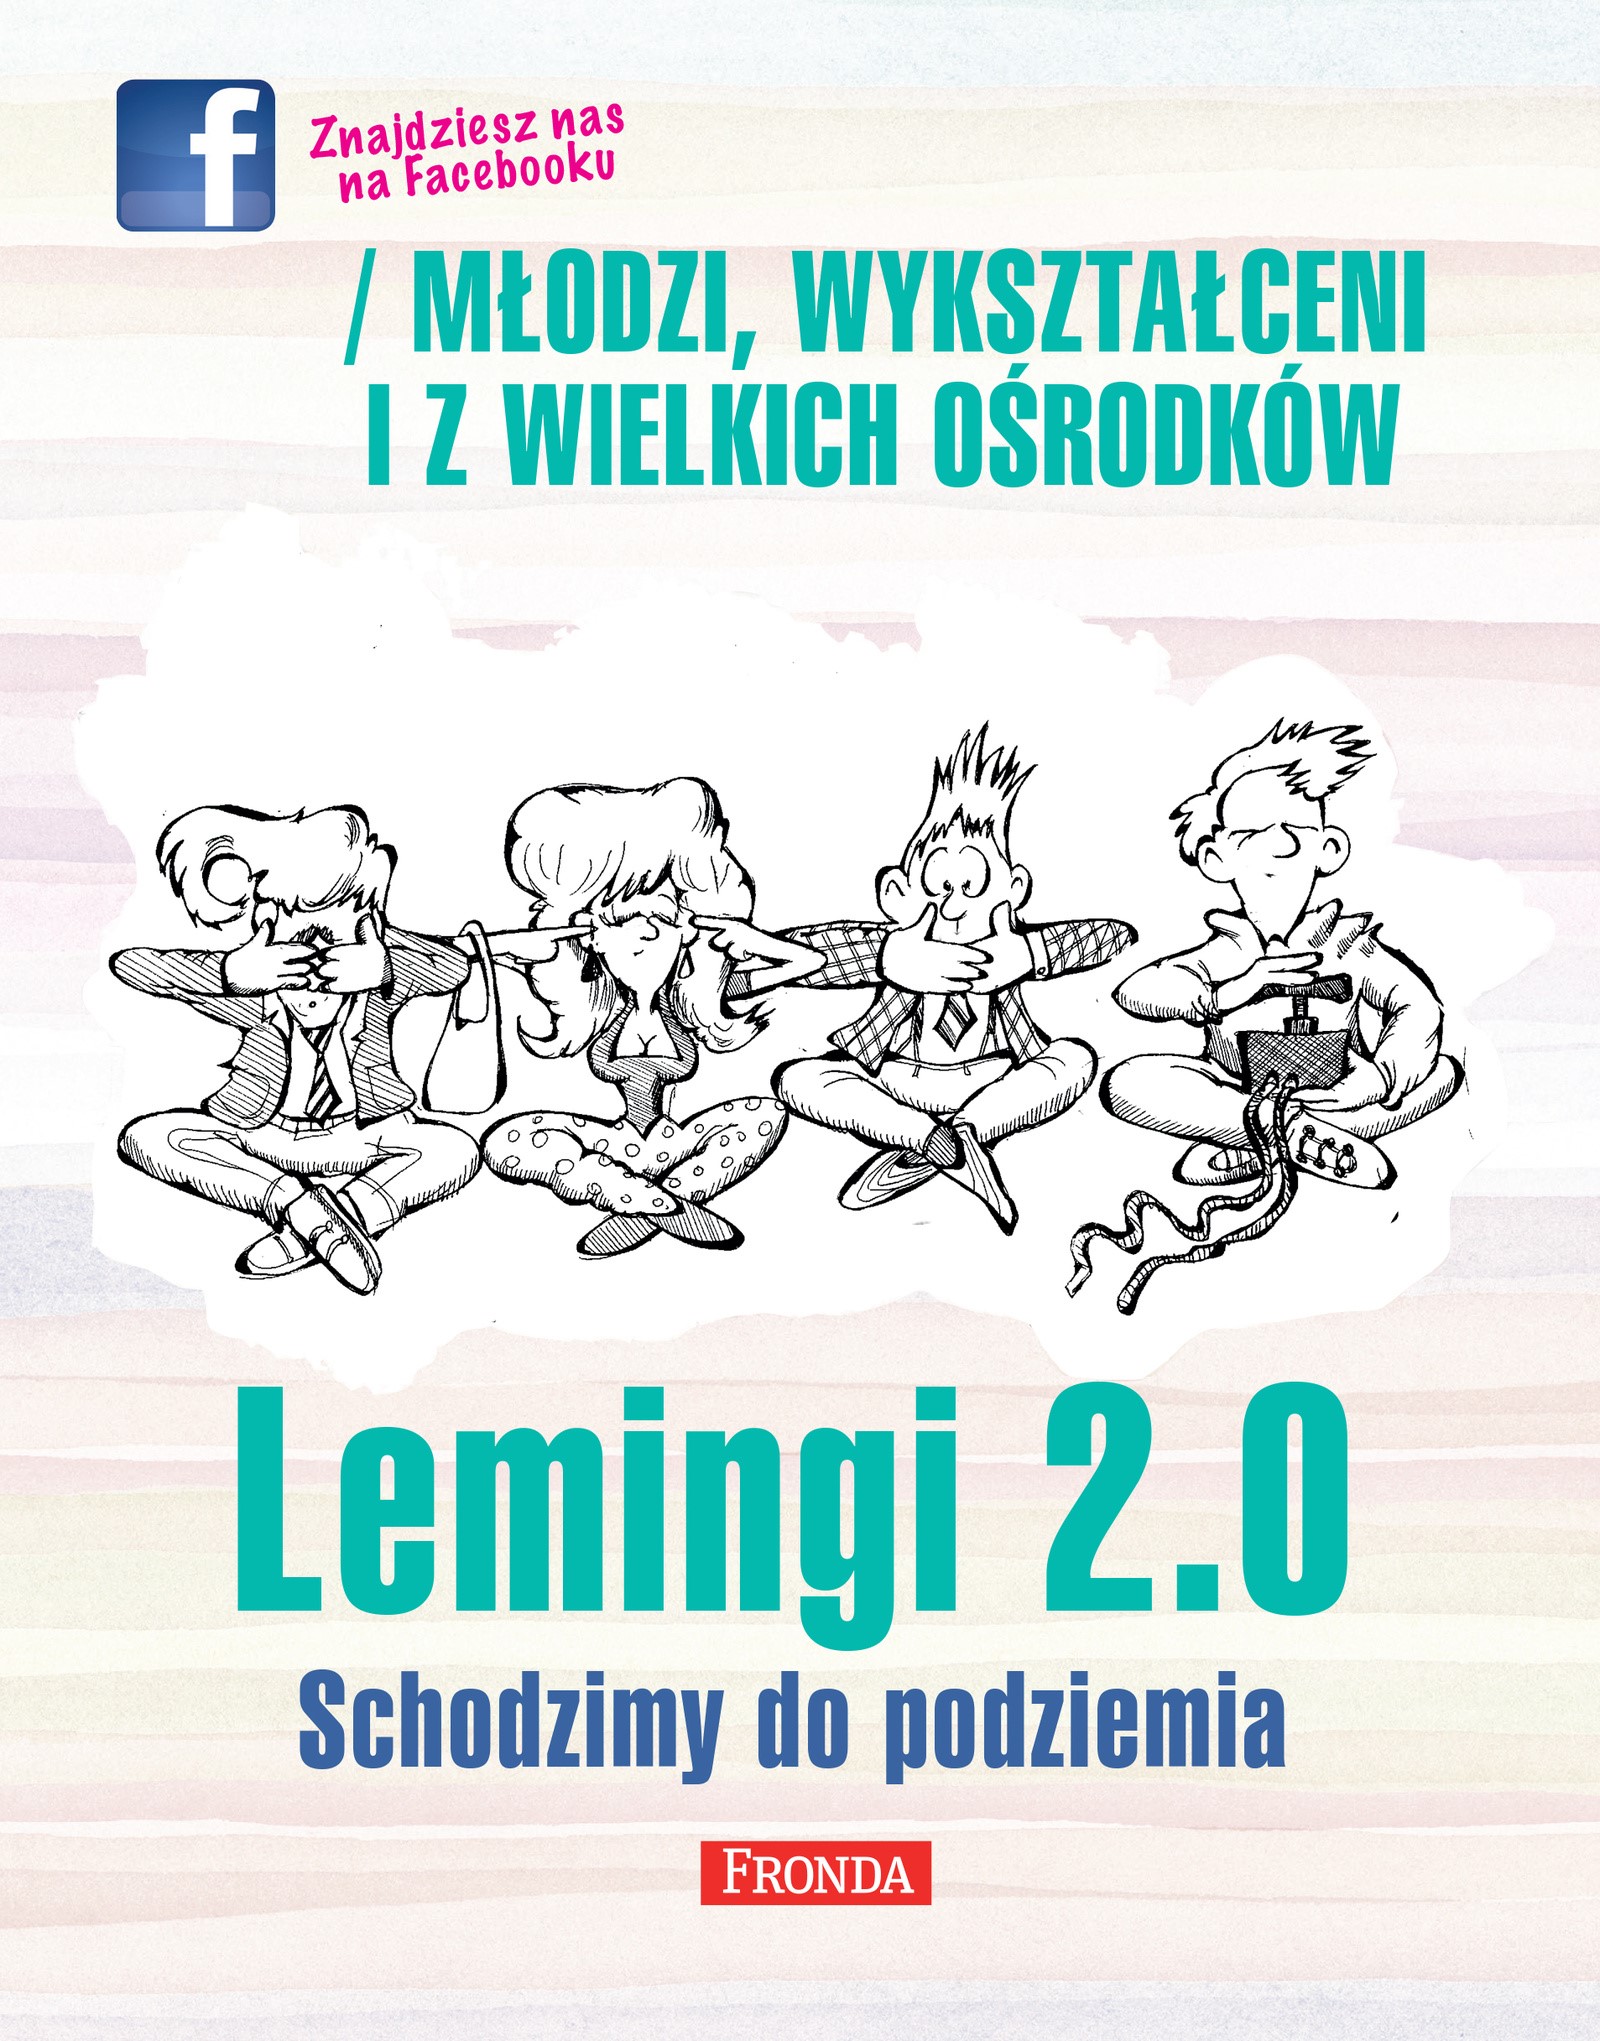 Okładka:Lemingi 2.0. Schodzimy do podziemia 